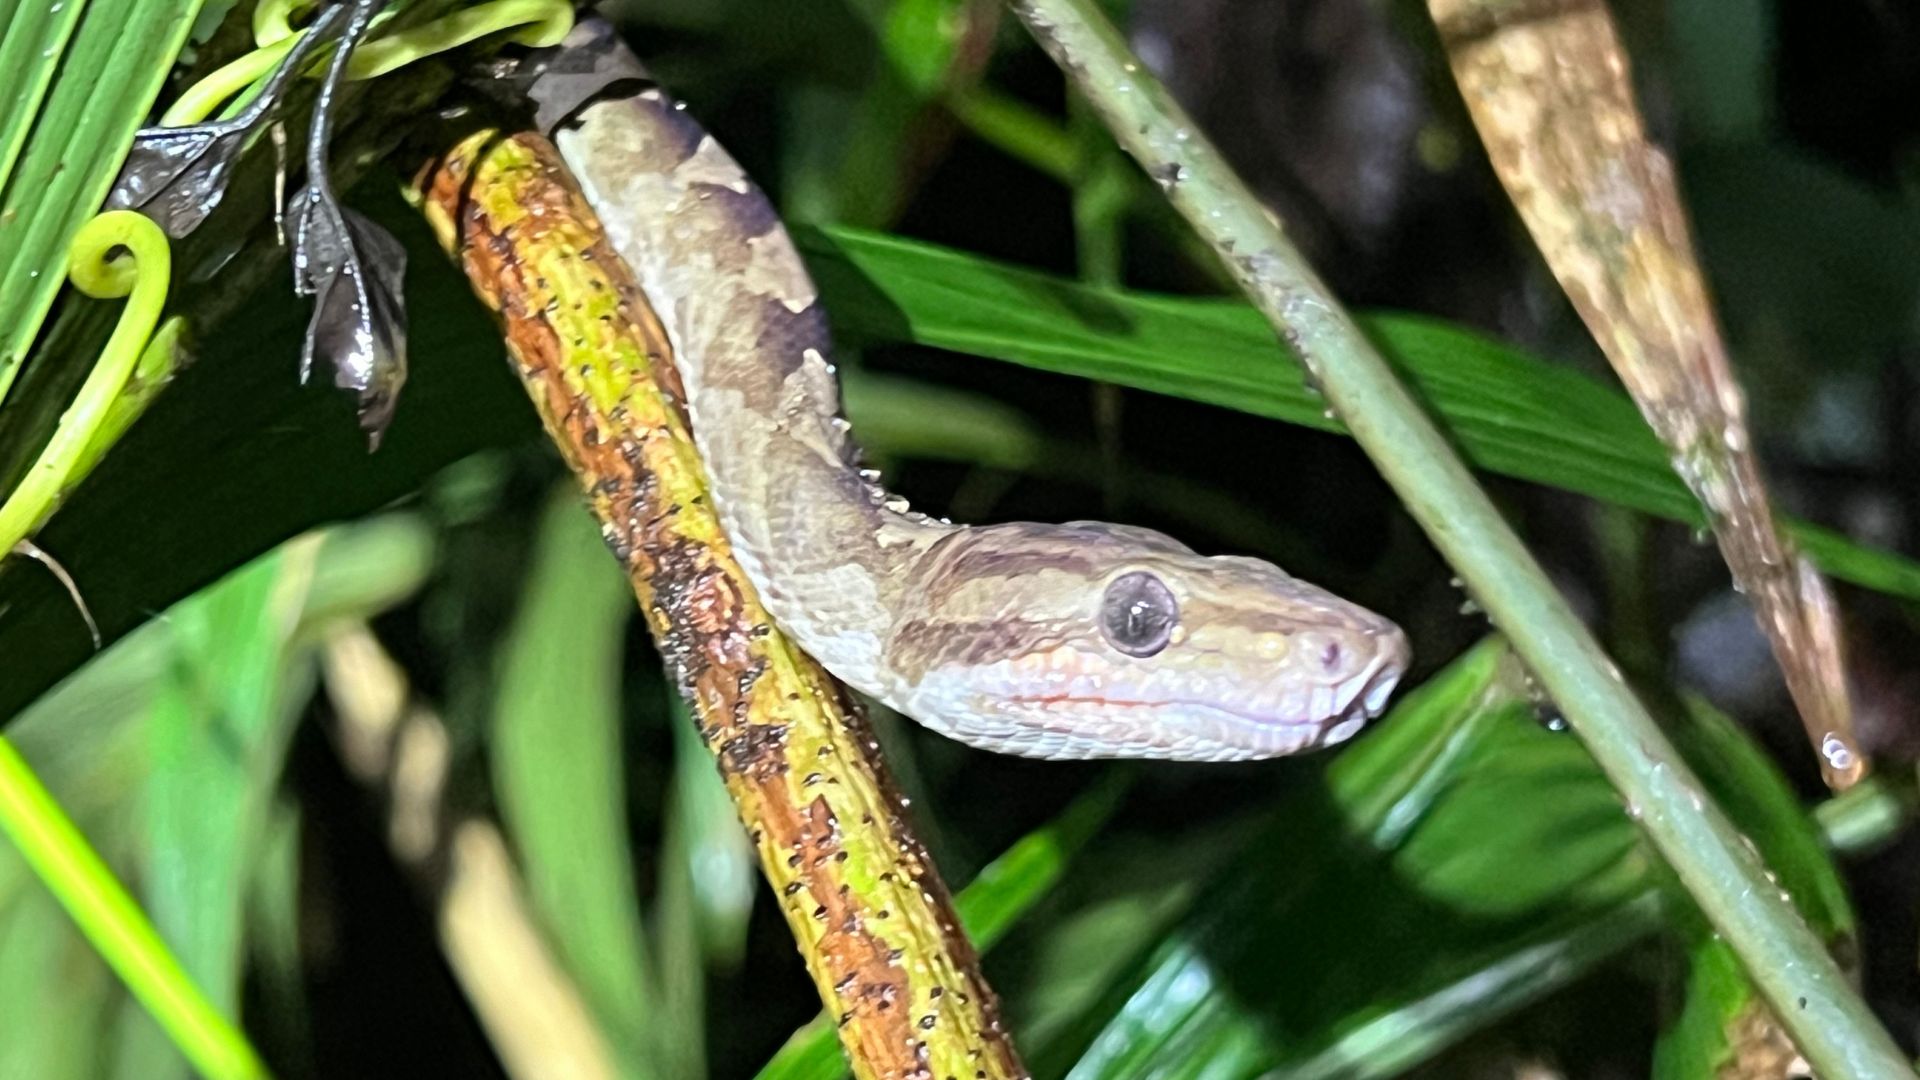 A snake in Costa Rica